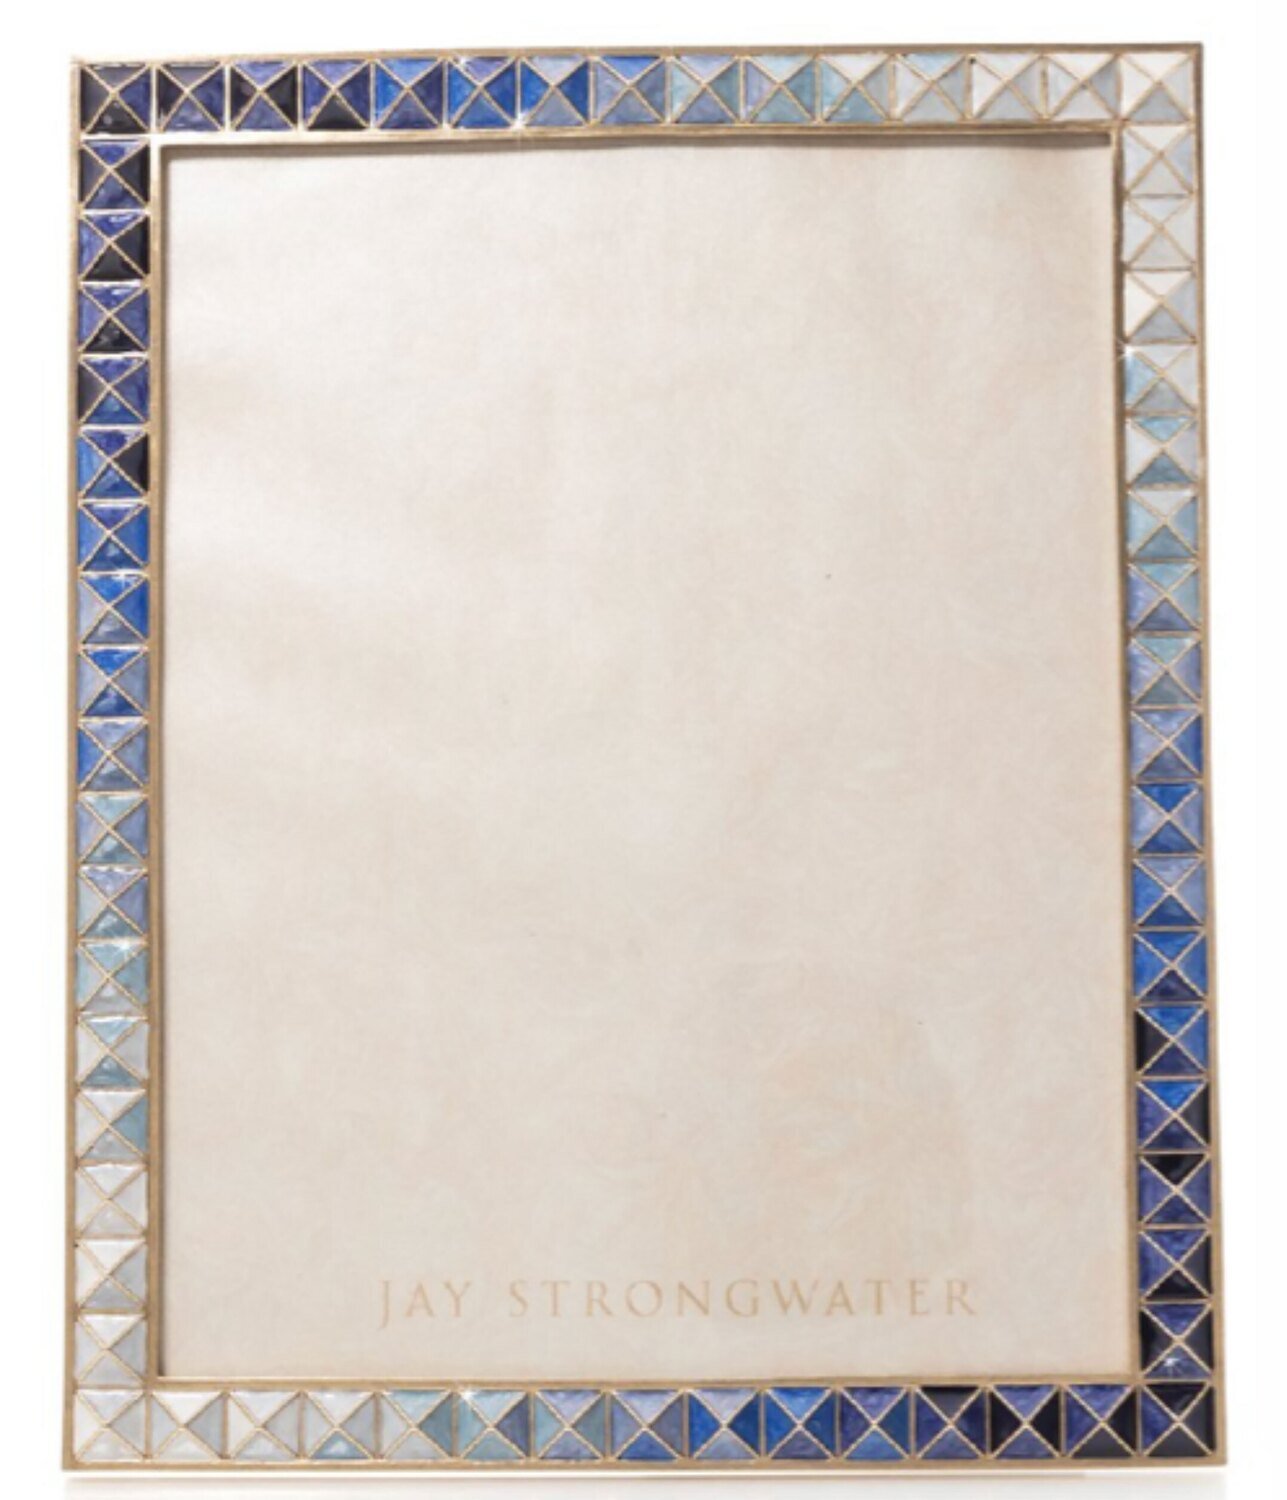 Jay Strongwater Vertex 8 x 10 Indigo Pyramid Picture Frame SPF5878-284